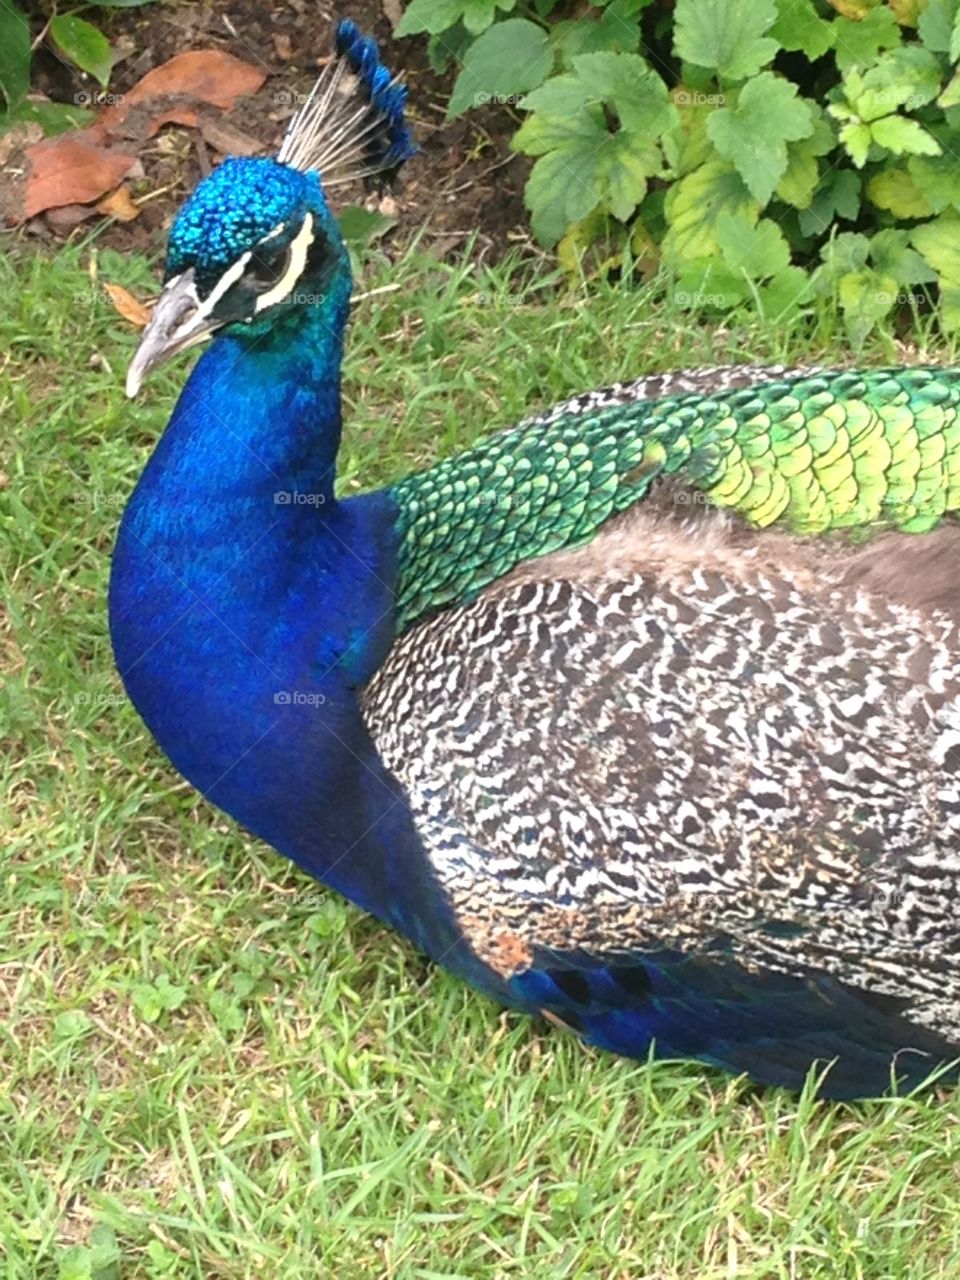 Blue peacock bird